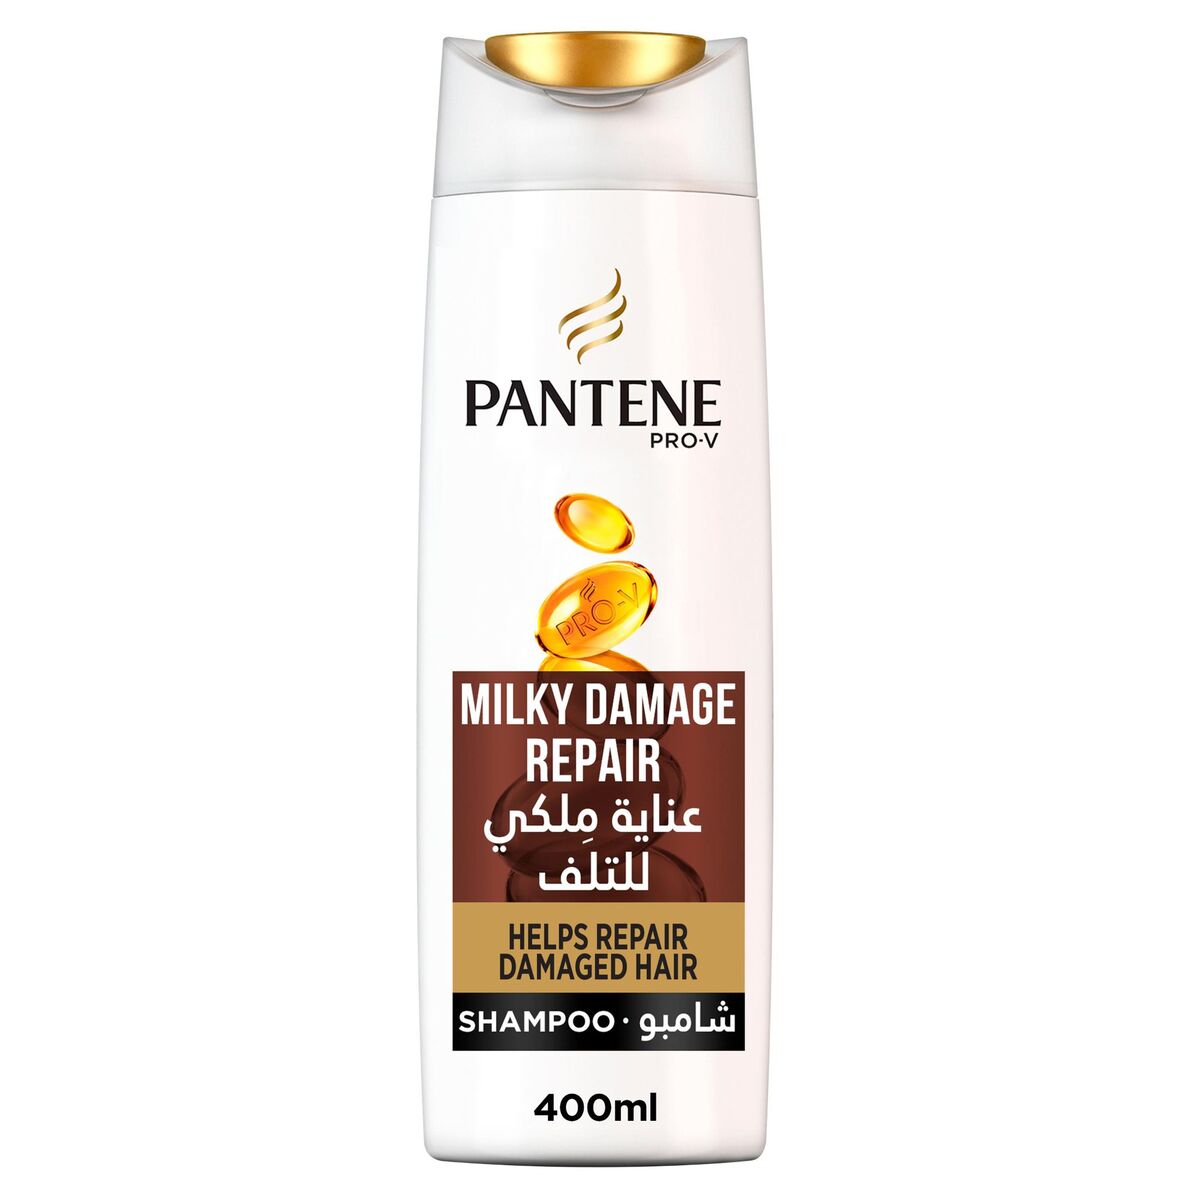 اشتري قم بشراء بانتين برو-في شامبو عناية ملكي للتلف 400مل Online at Best Price من الموقع - من لولو هايبر ماركت Shampoo في السعودية